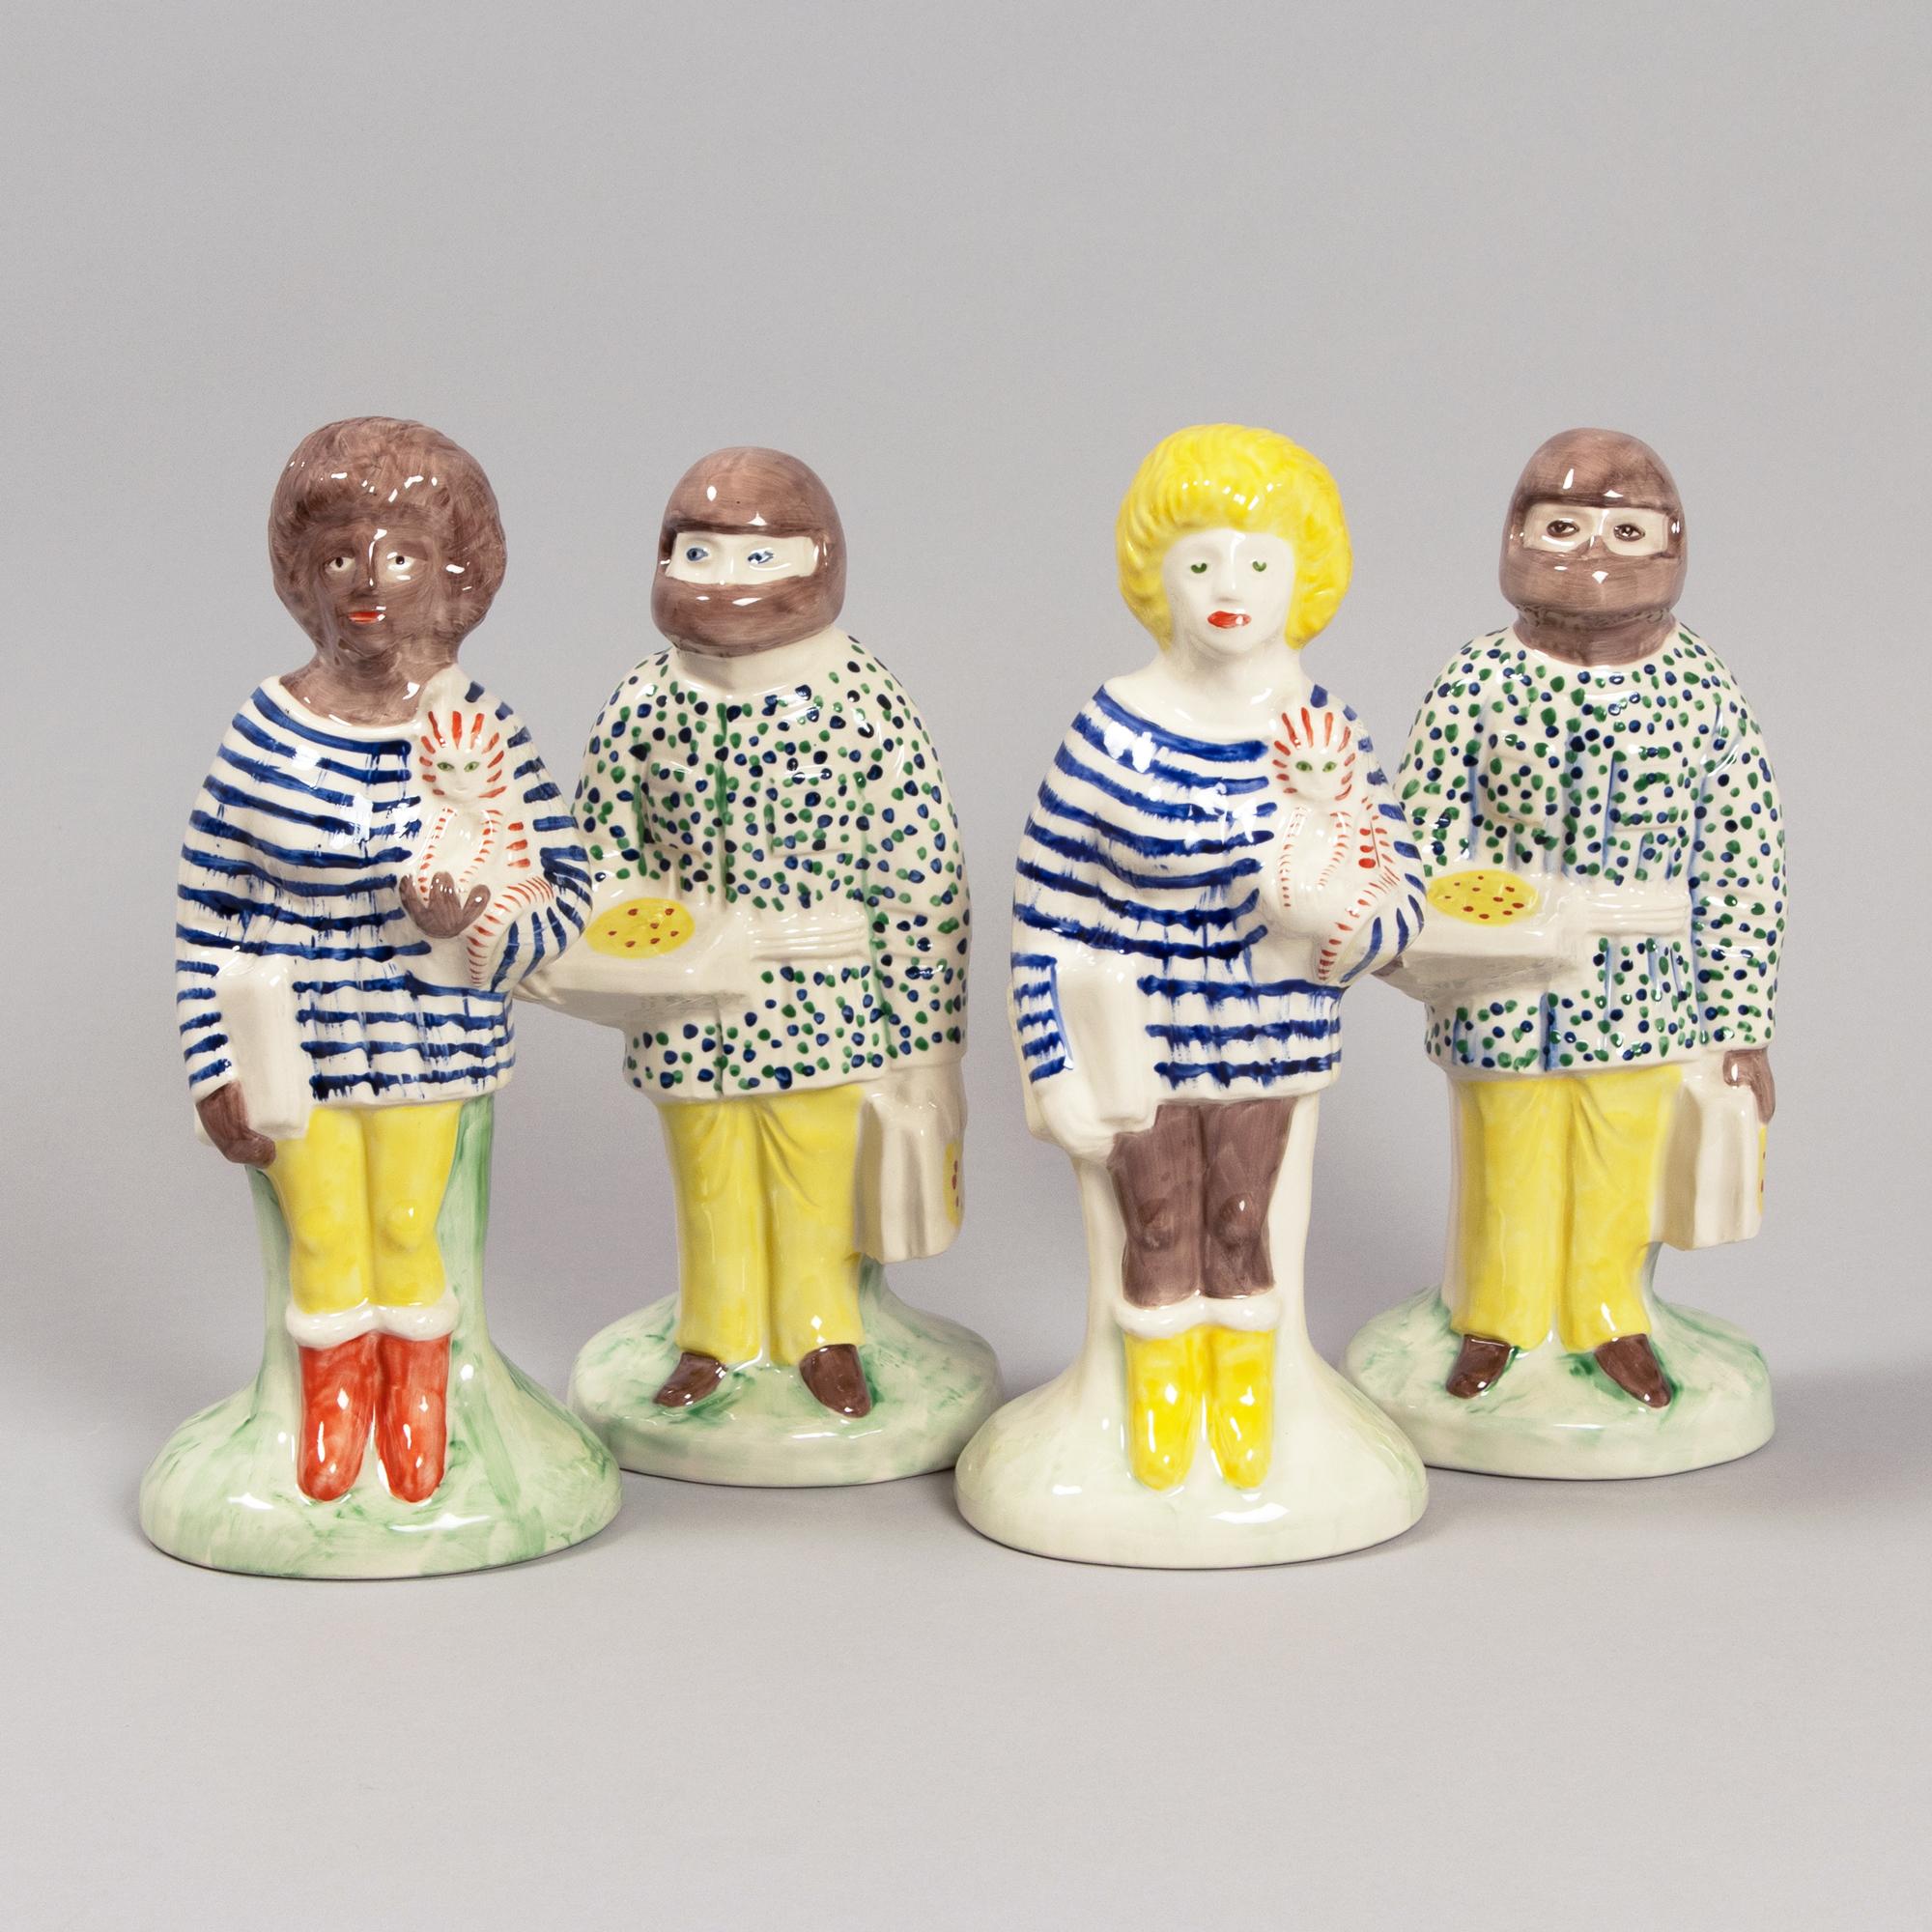 Grayson Perry (britannique, né en 1960)
Travailleurs à domicile et travailleurs clés Chiffres du Staffordshire, 2021
Moyen : L'ensemble complet de quatre figurines en céramique de faïence blanche peintes en couleurs et émaillées.
Dimensions :